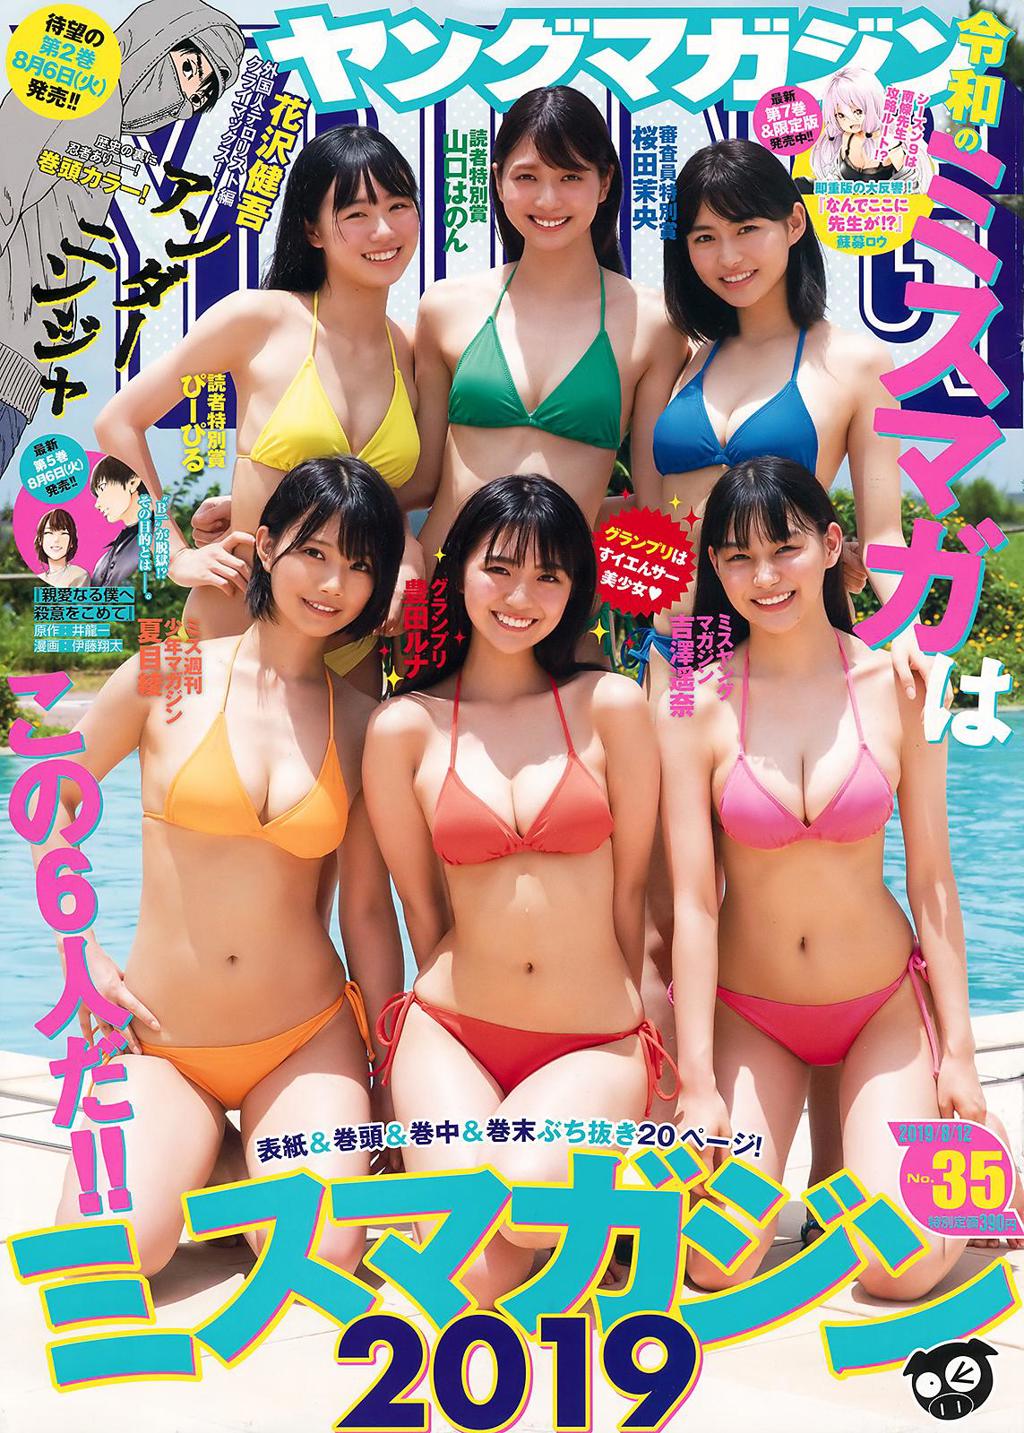 丰田露娜.杂志[Young Magazine] 2019 No.35 (豊田ルナ 他)